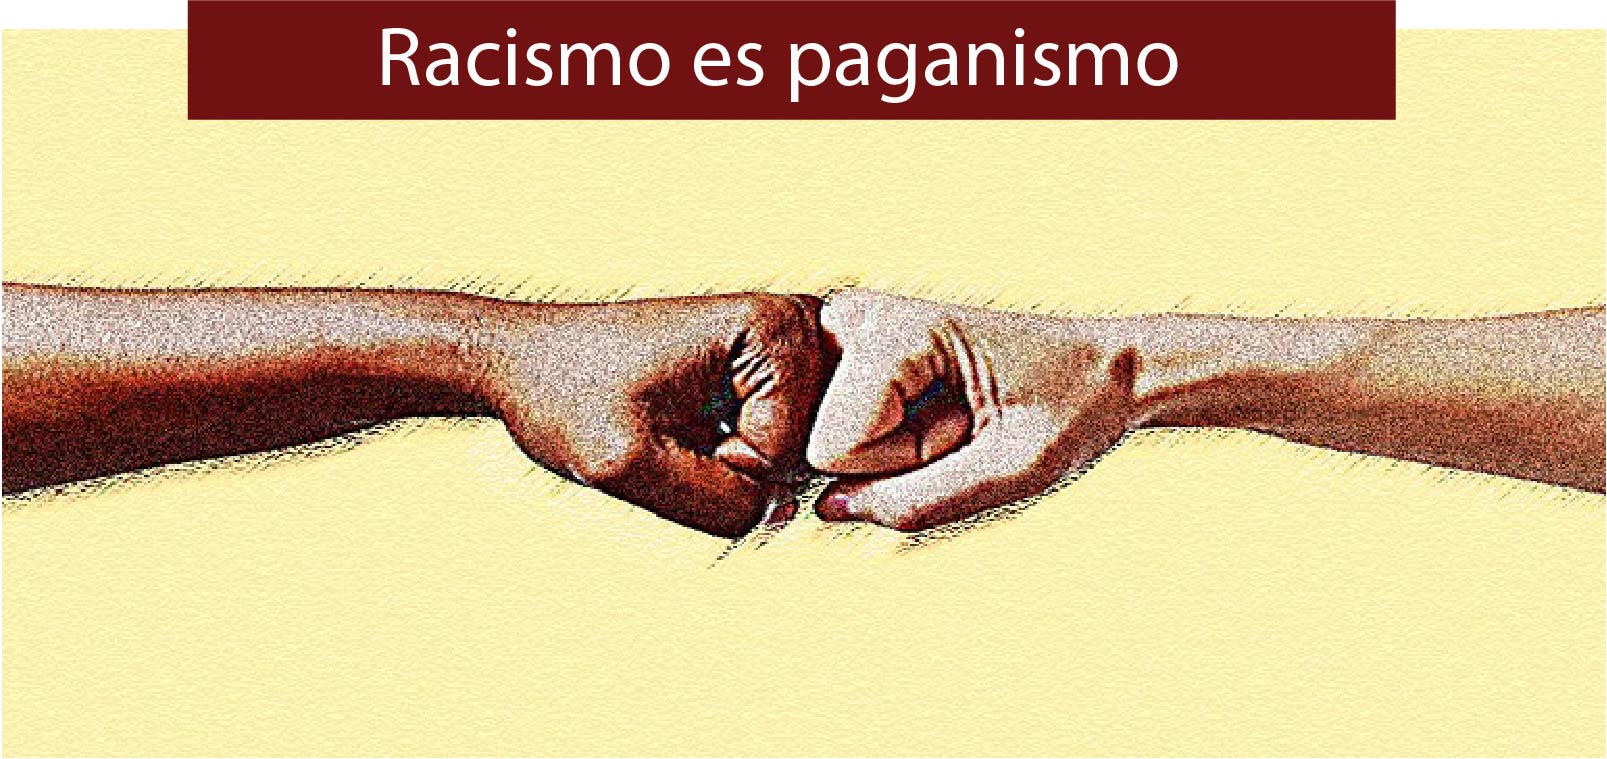 Racismo es paganismo